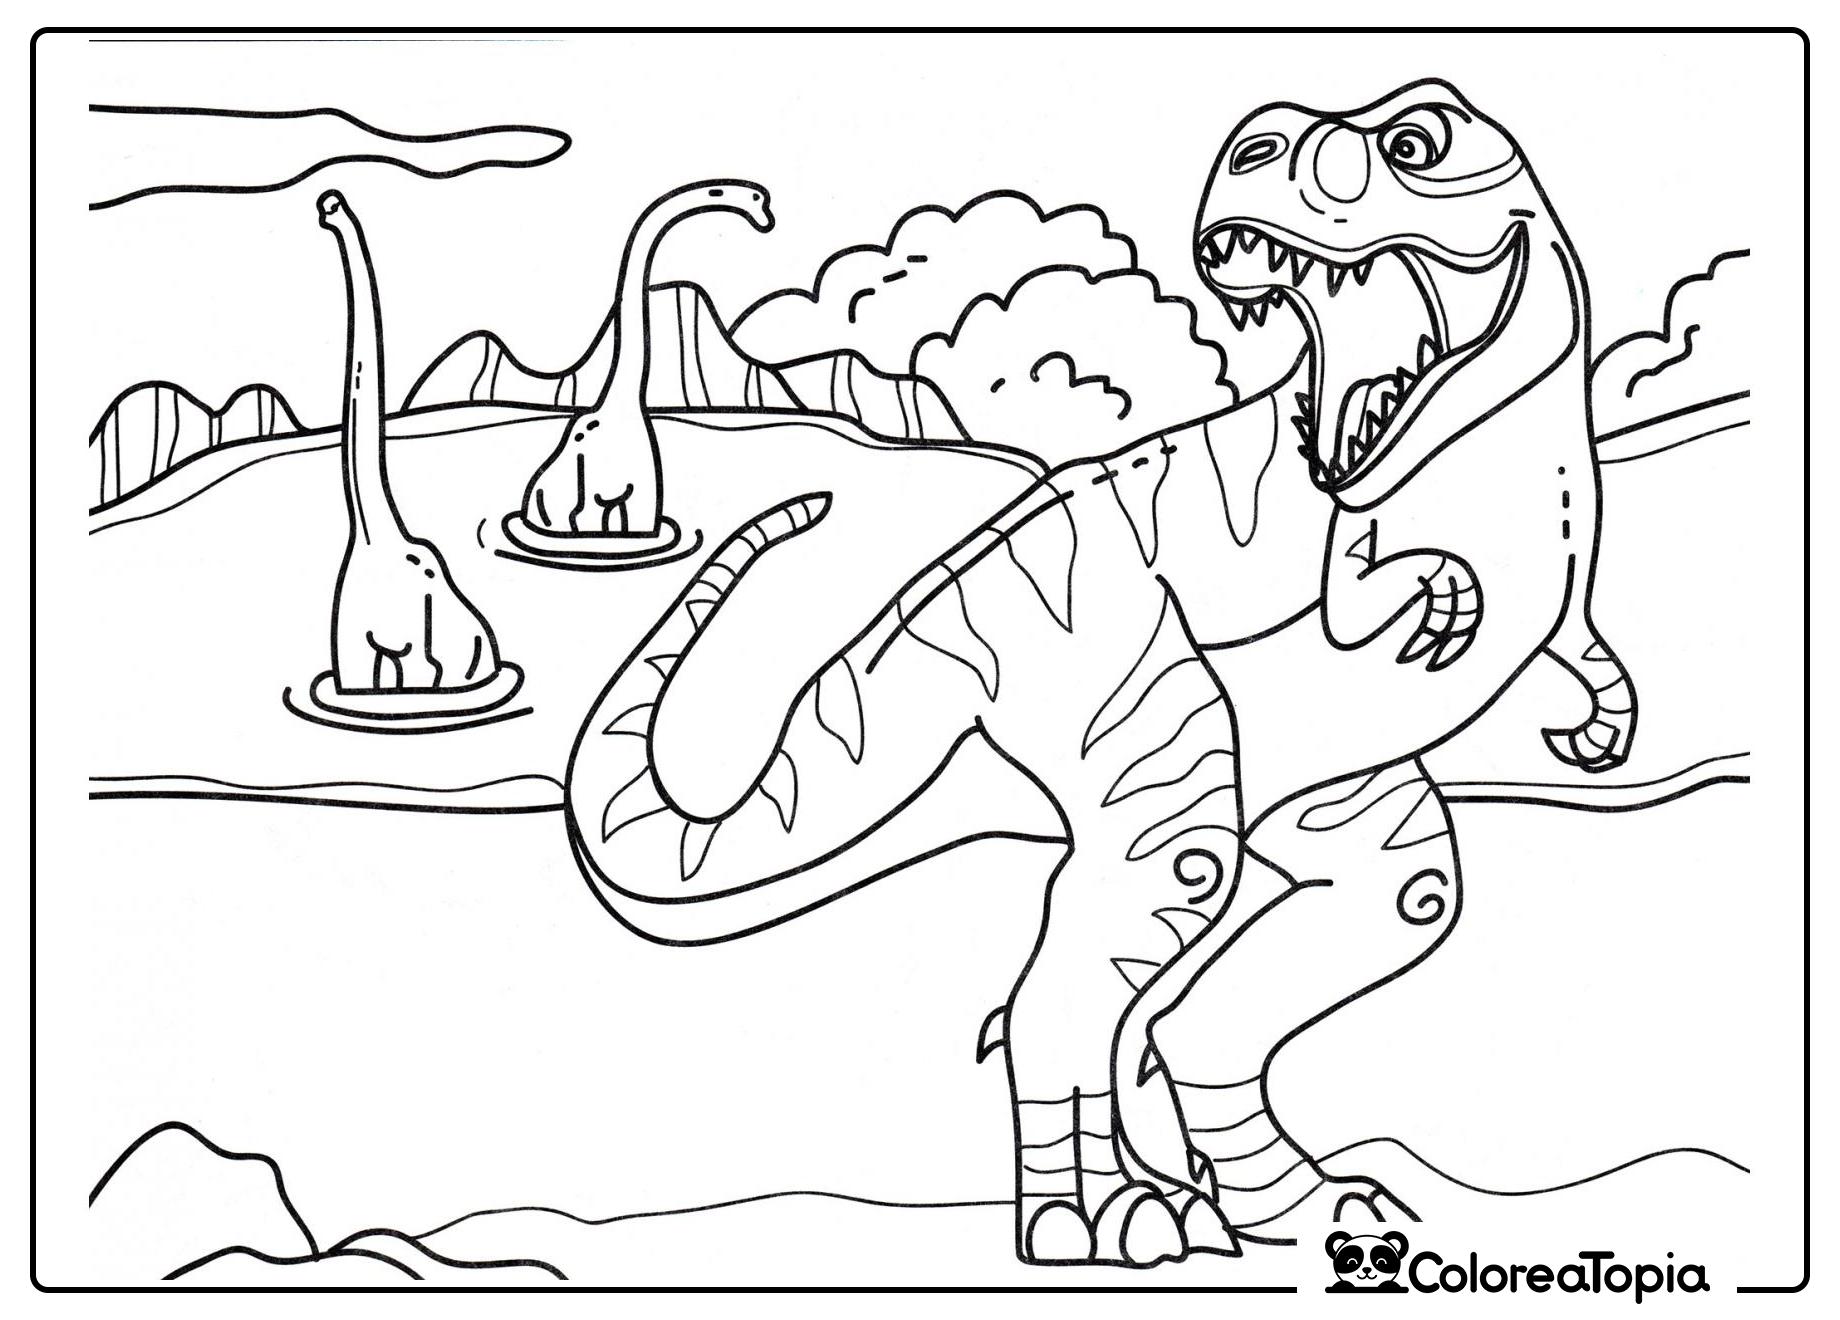 Tiranosaurio cazando - dibujo para colorear